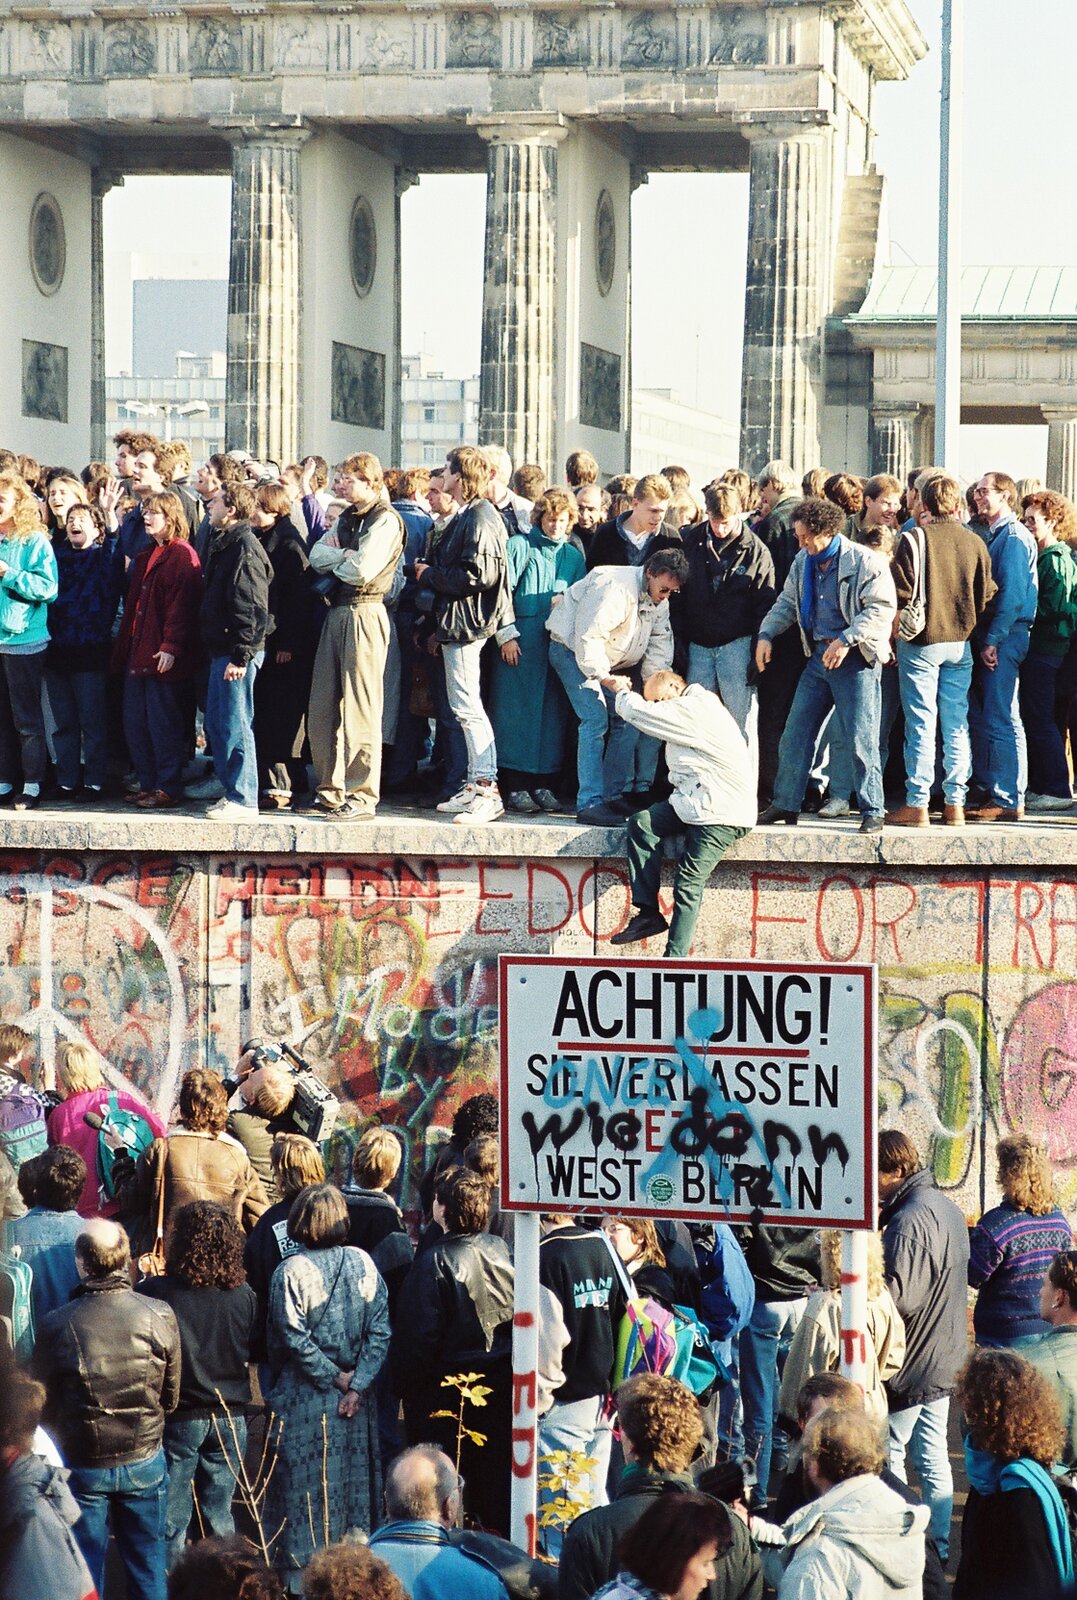 Zdjęcie przedstawia ludzi tłumnie zgromadzonych na szczycie oraz u podstawy muru berlińskiego w okolicach Bramy Brandenburskiej. Wśród zgromadzonych są kobiety, mężczyźni i dzieci. Jedna z osób stojących na murze pomaga wspiąć się na niego starszemu mężczyźnie. Ściana muru pokryta jest kolorowymi napisami i ściennymi grafikami. Przed nim ustawiona jest tablica ostrzegawcza z napisem w języku niemieckim, na której dopisane są czarnym sprayem dodatkowe słowa.